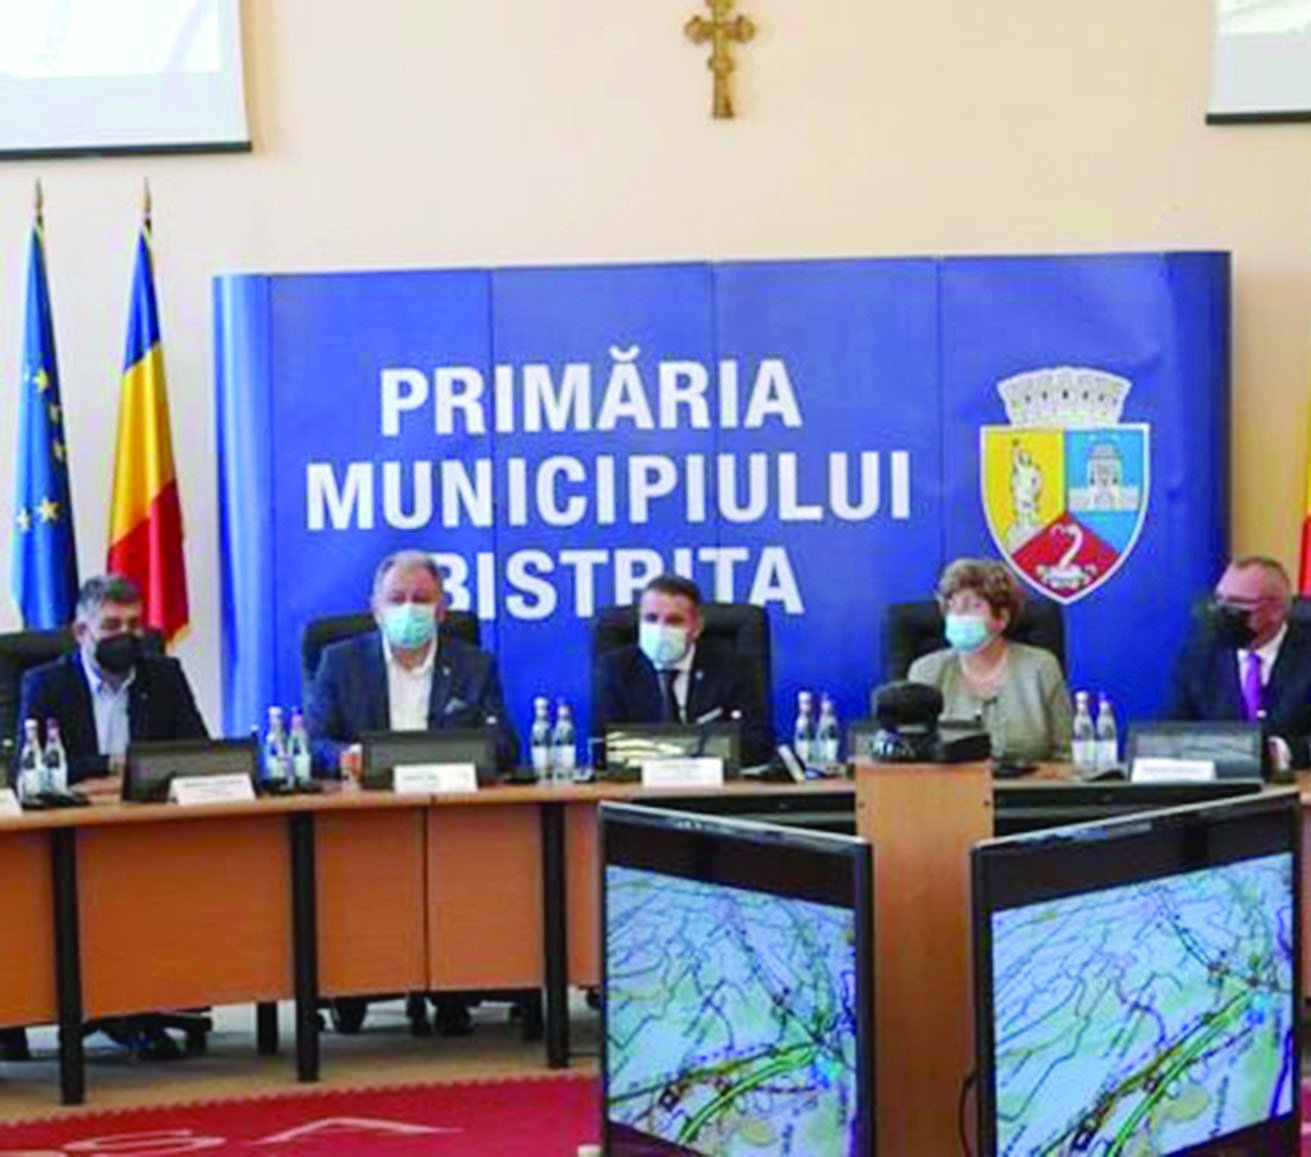 Új utak épülnek Besztercén: gyorsforgalmi utat és körgyűrűt is kap az észak-erdélyi város